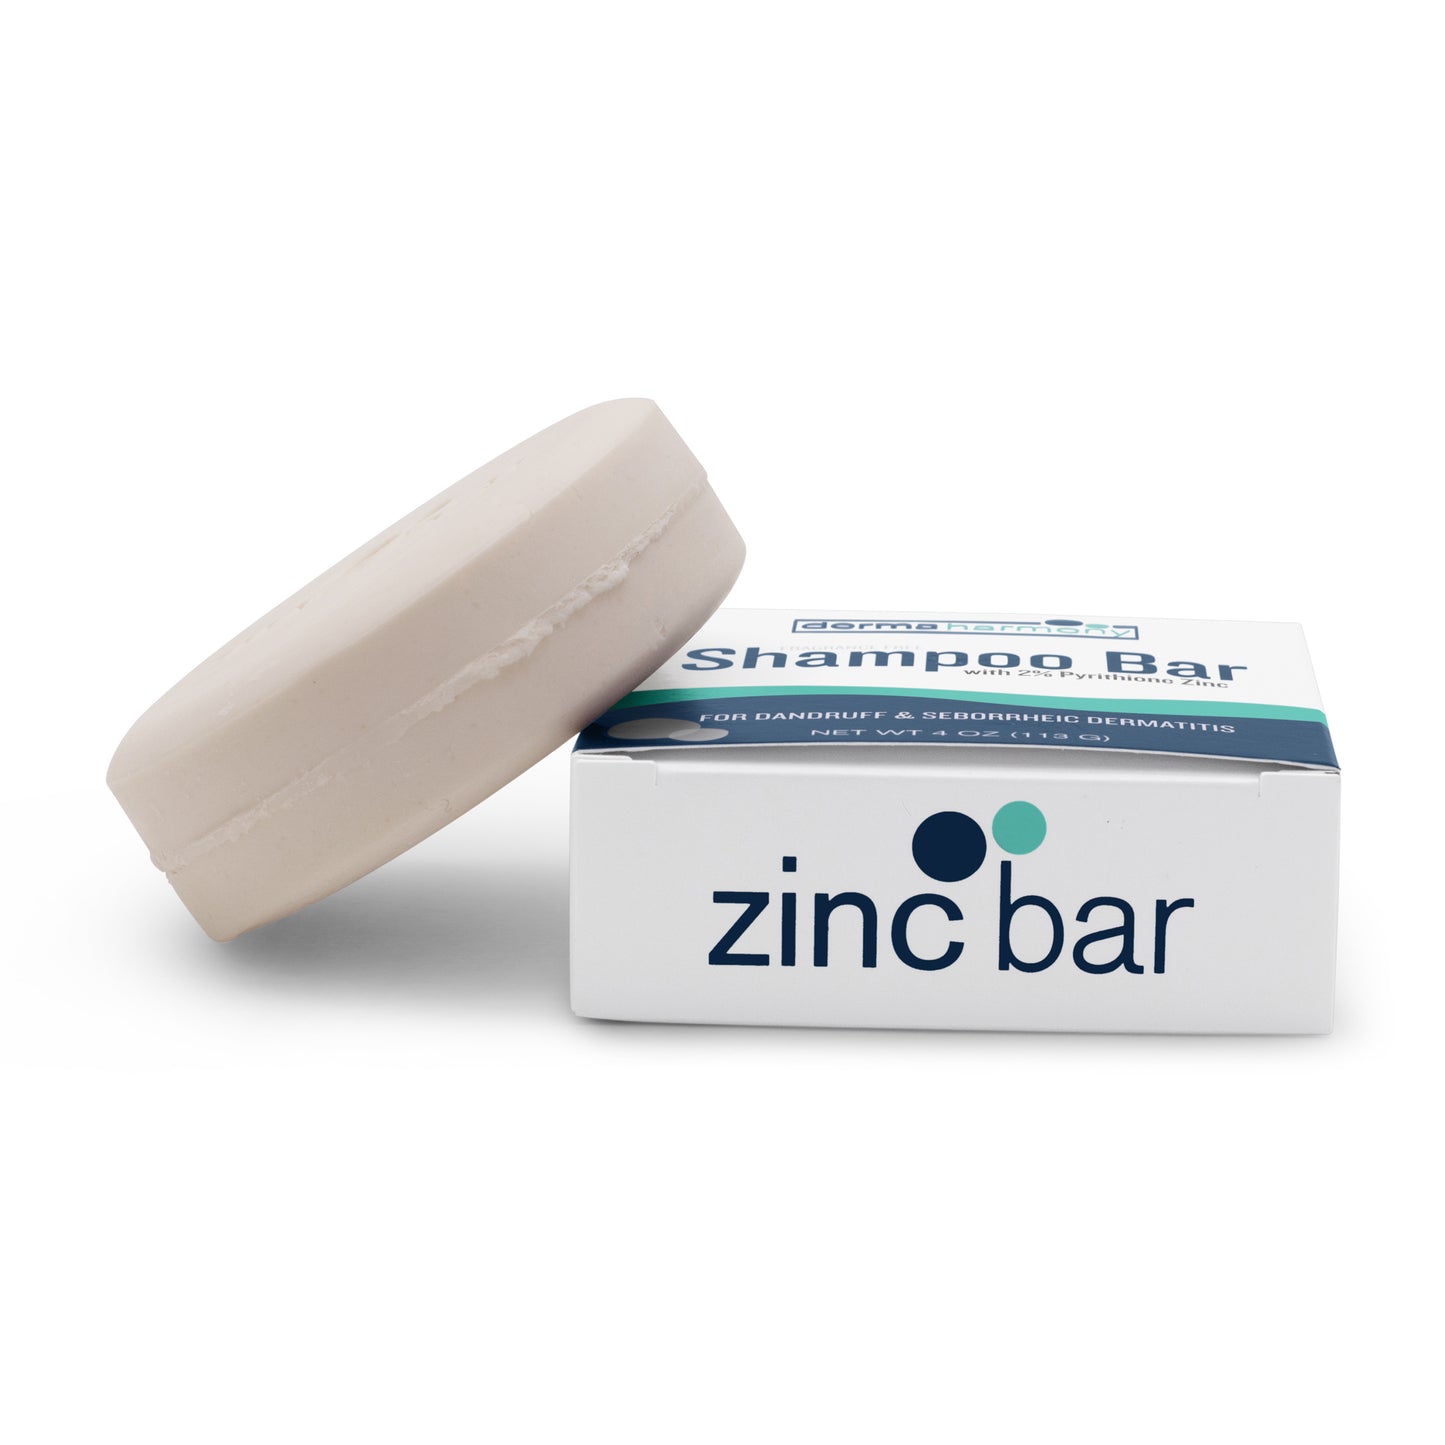 2% Pyrithione Zinc Dandruff & Seborrheic Dermatitis Shampoo Bar - Fragrance-Free - 4 oz